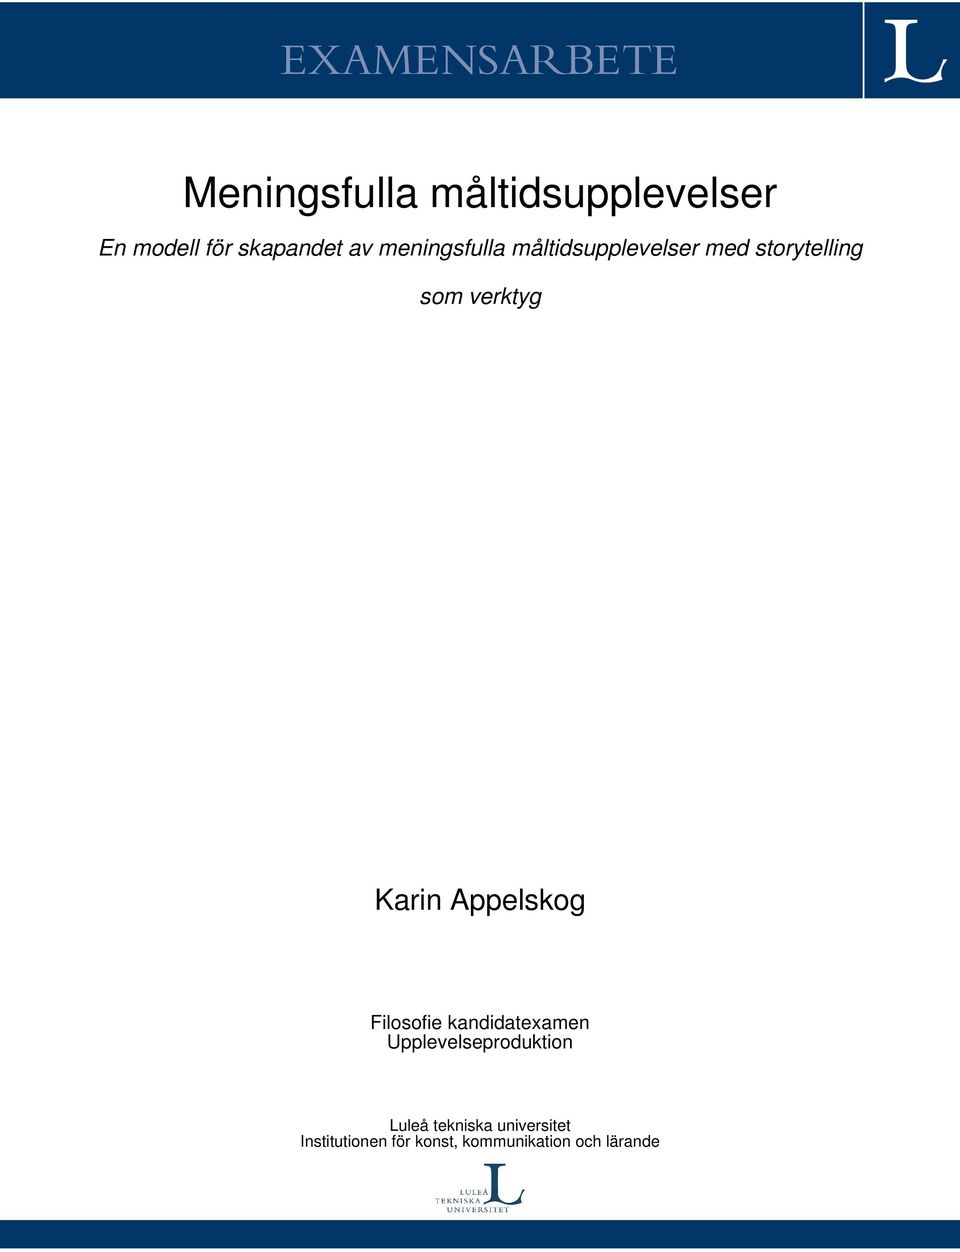 verktyg Karin Appelskog Filosofie kandidatexamen